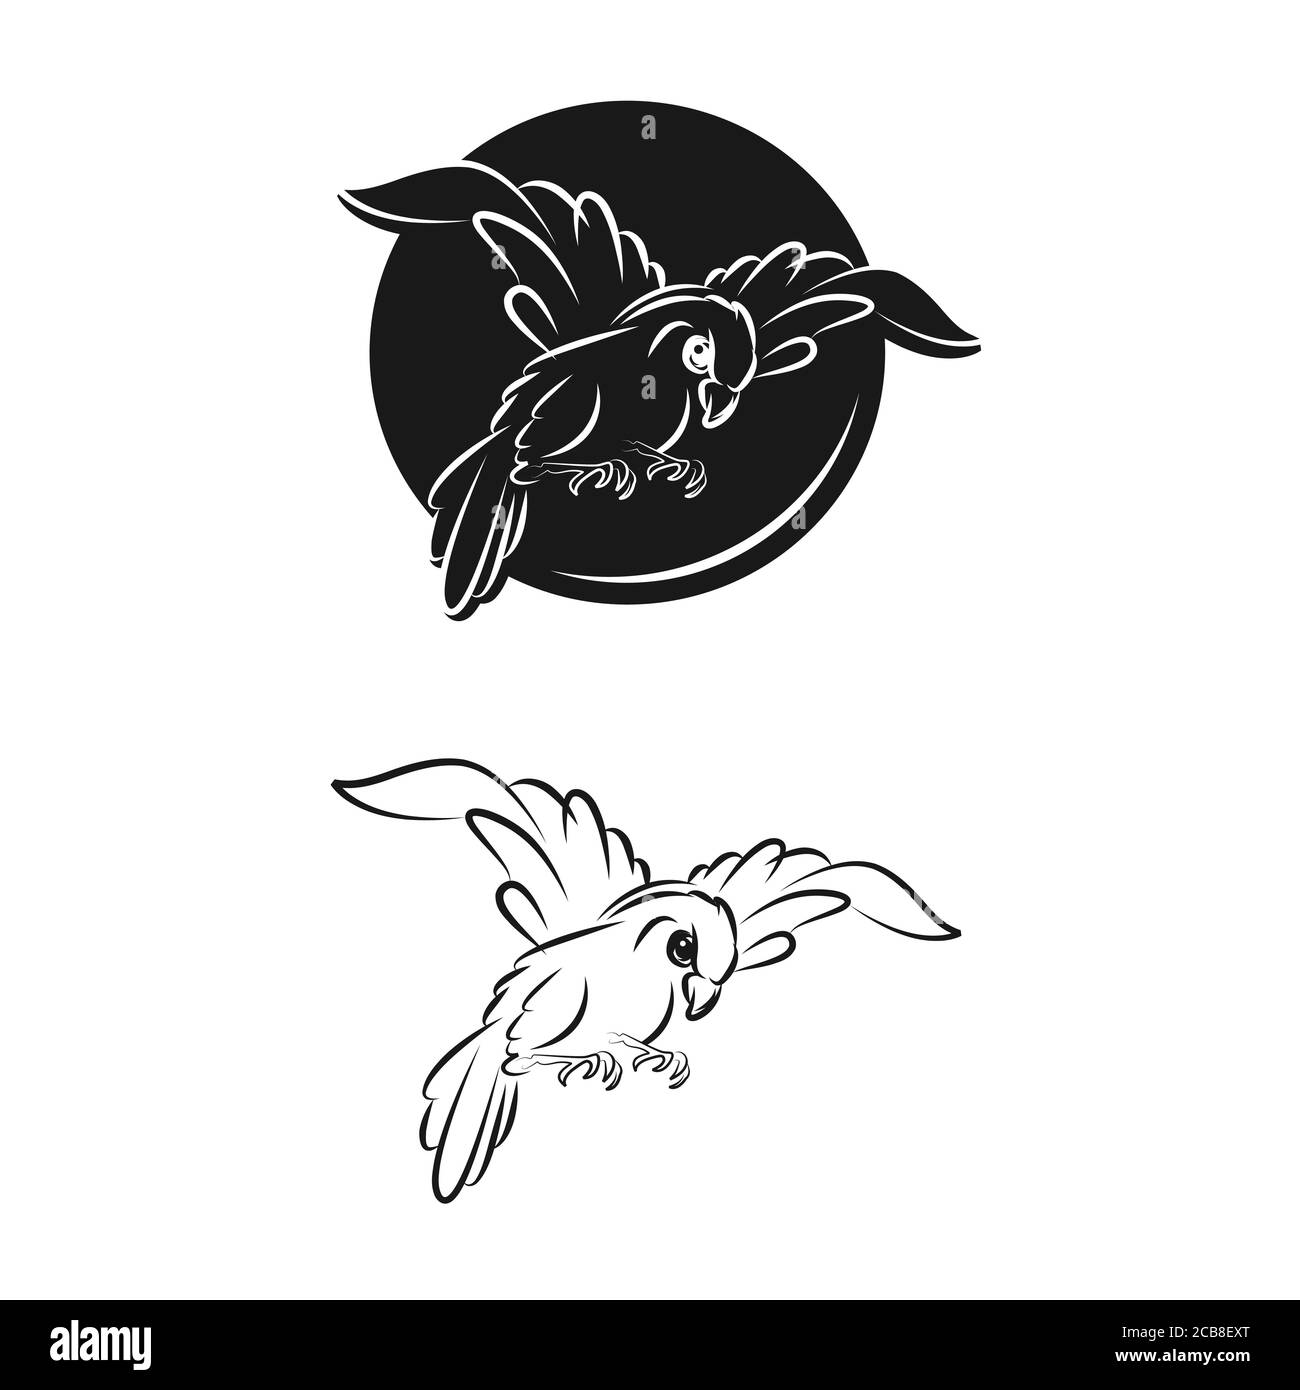 Uccello vettore logo astratto grafico fuori linea e moderno con foglia. Vettore isolato insieme di uccelli volanti con diffusione ali fluttering. Illustrazione Vettoriale